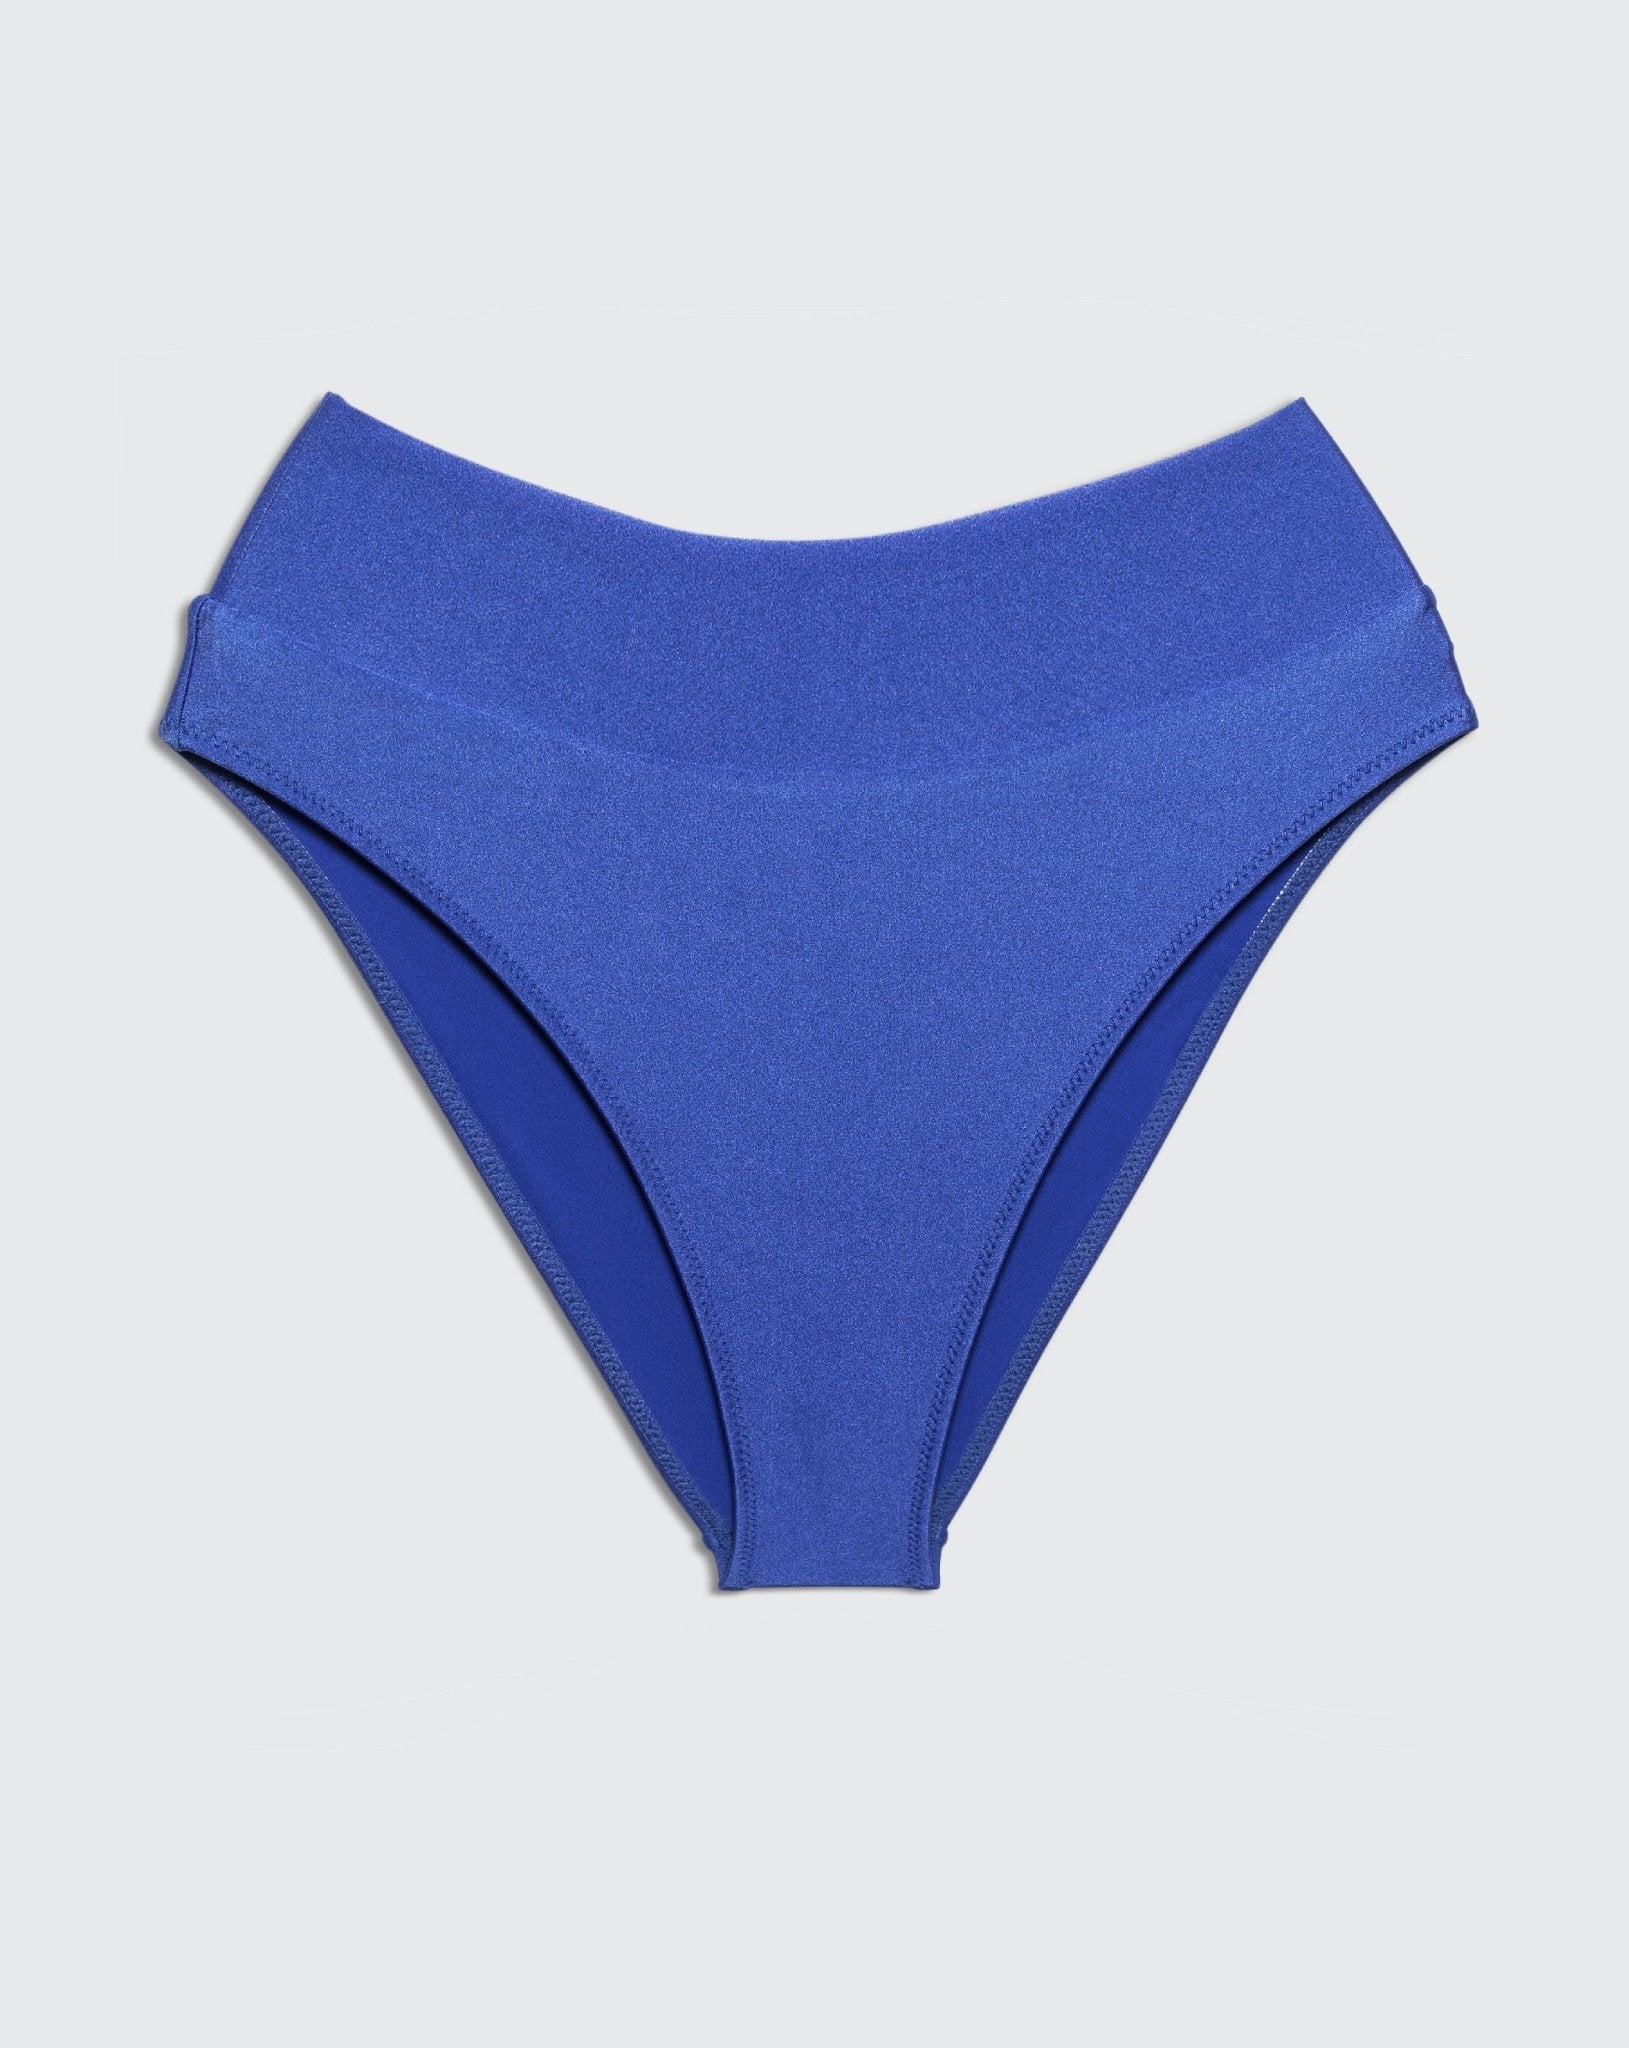 YUMI BOTTOM Vista Blue - BIKINI -BiliBlond Swimwear